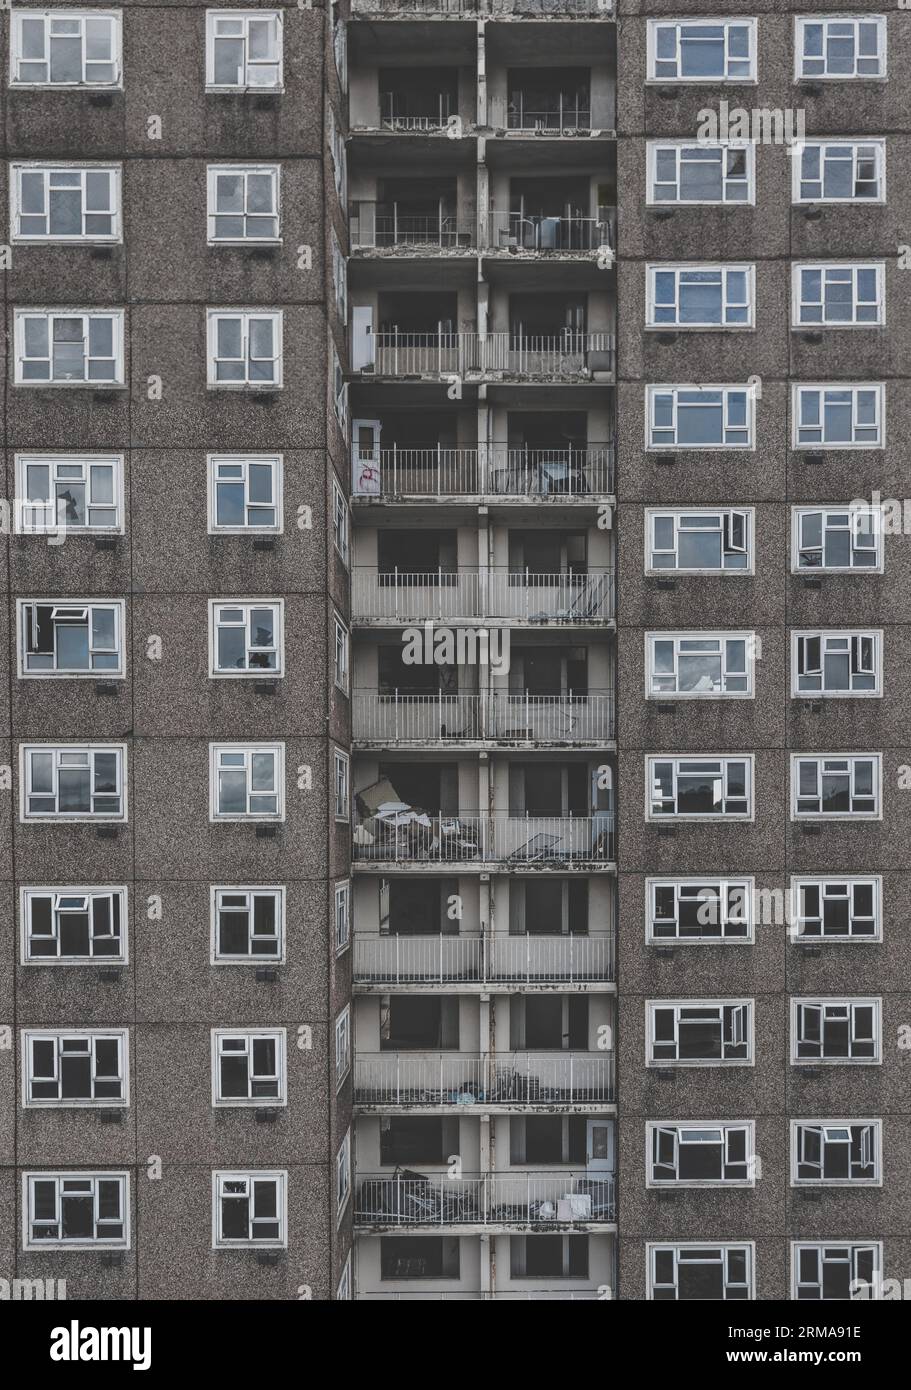 Hintergrund der Architektur eines verlassenen Turmblocks aus den 1960er Jahren mit Reihen von kaputten Fenstern und Balkonen in einem Teil der Innenstadt, der r braucht Stockfoto